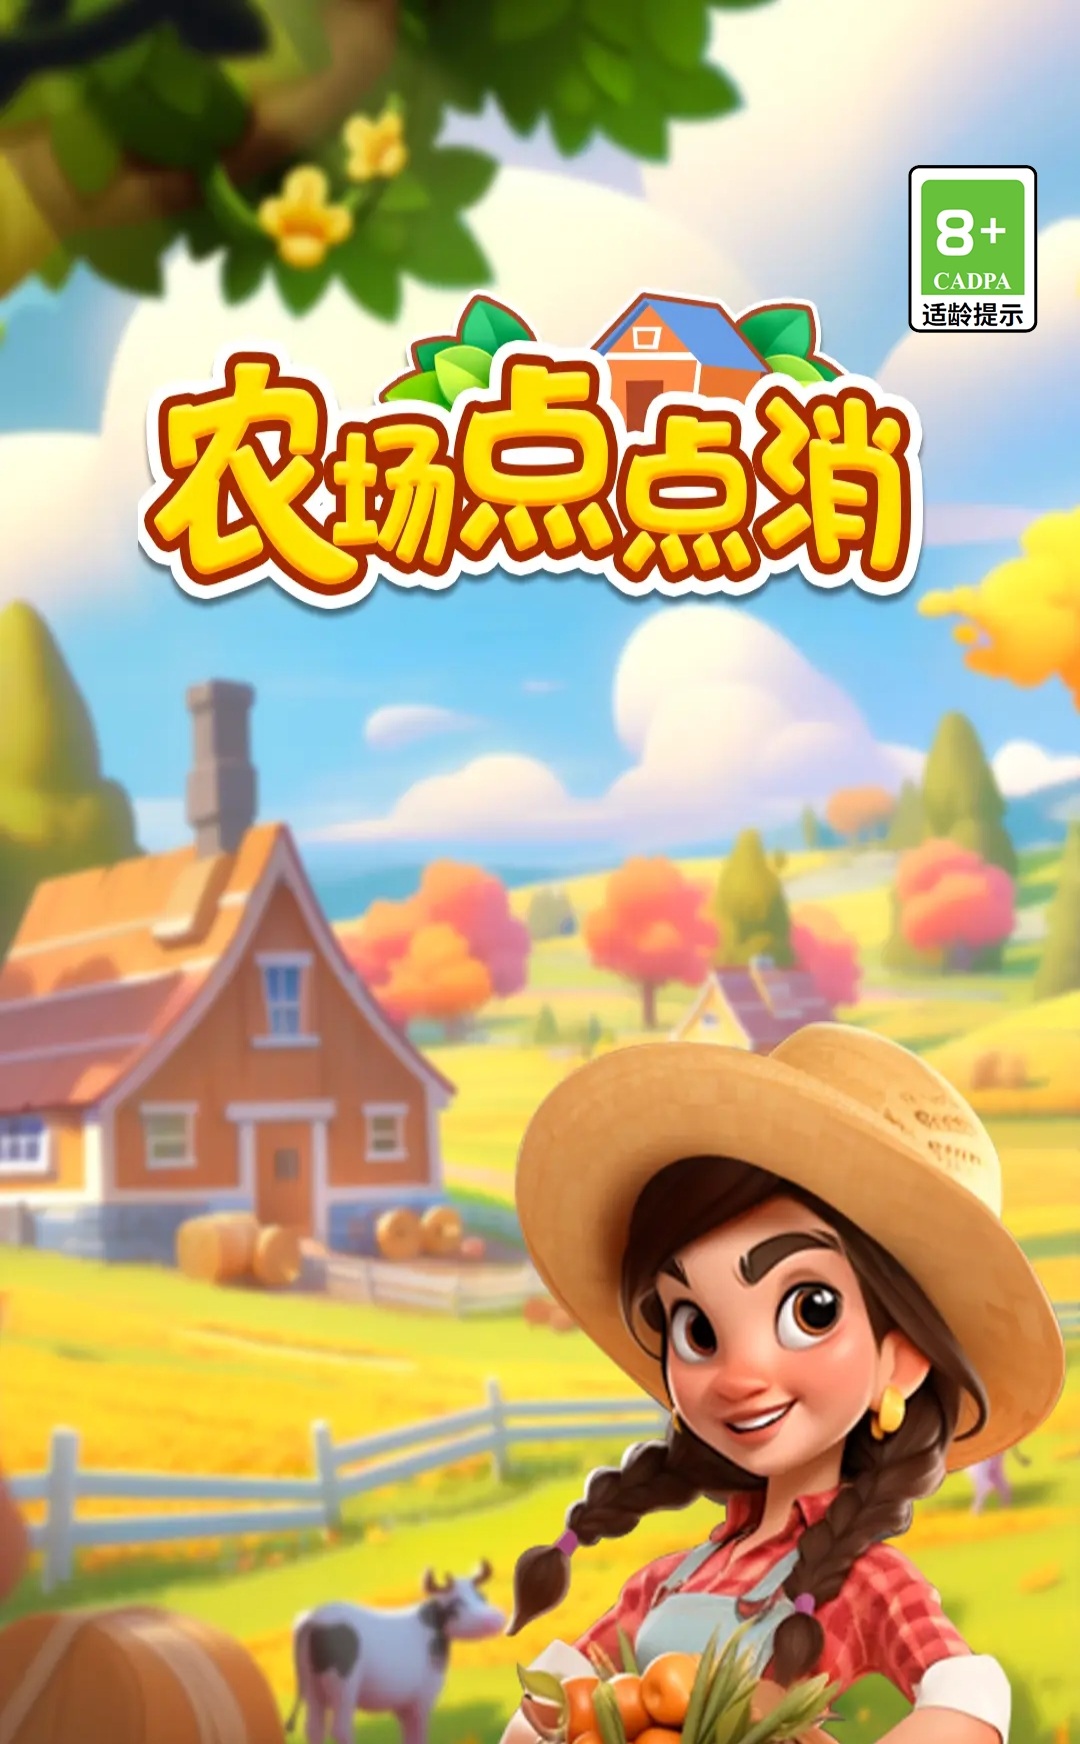 【光年游戏】农场点点消，光年家7月31日推出的小游戏，消除系列